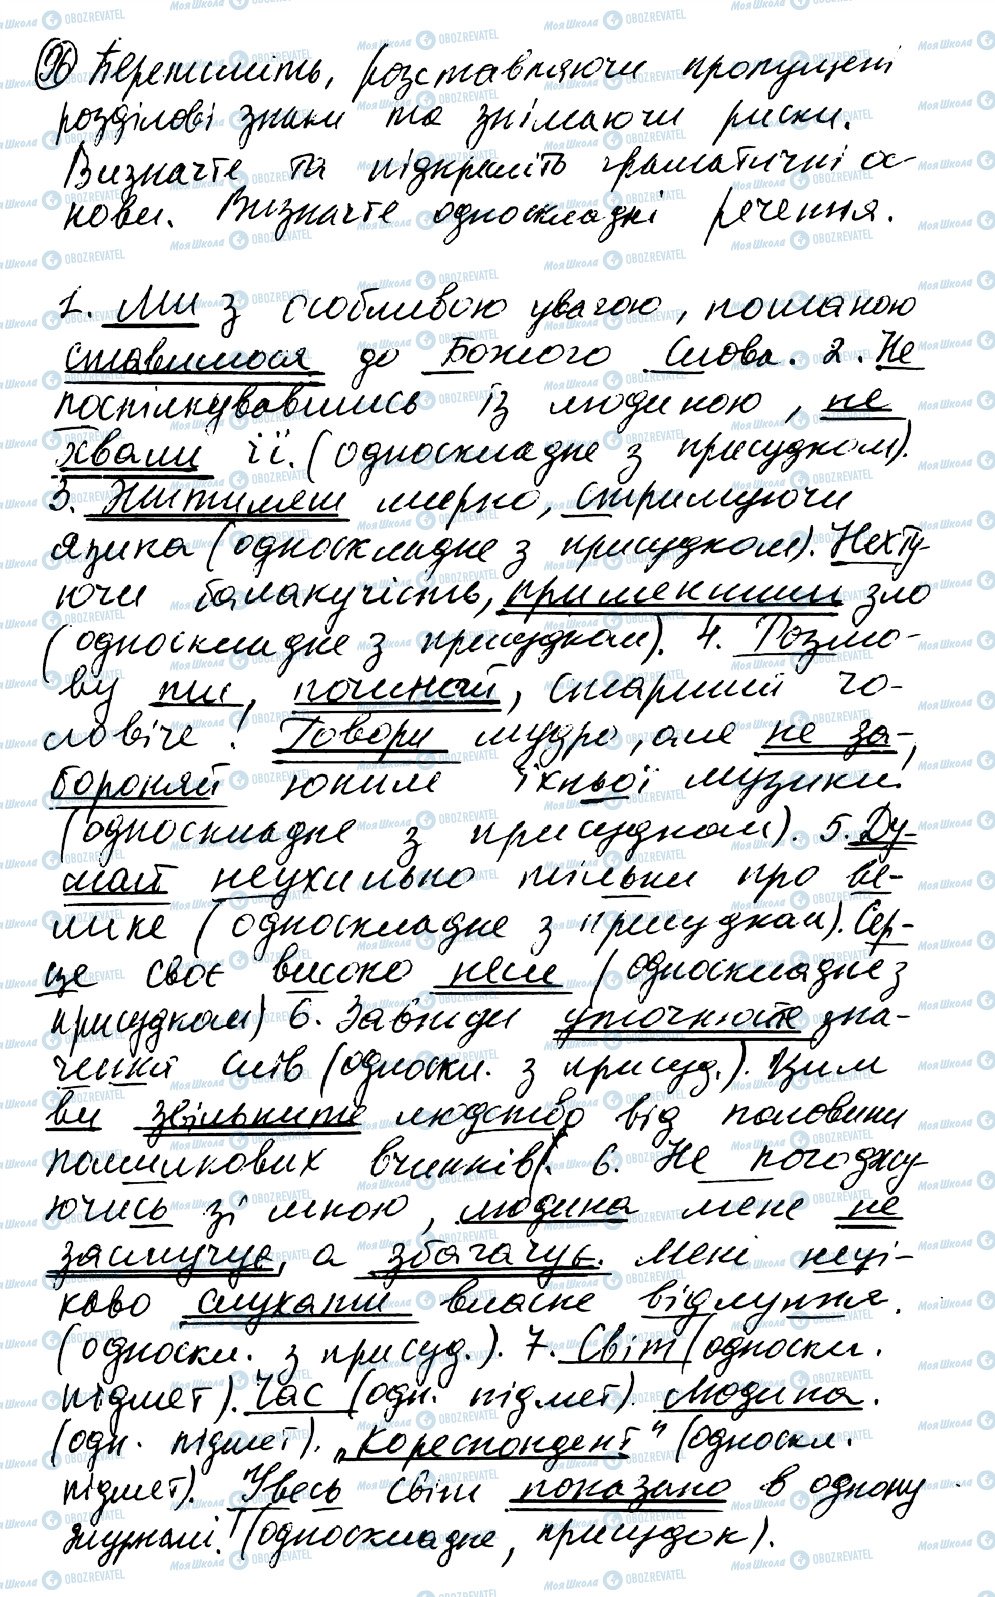 ГДЗ Українська мова 8 клас сторінка 96